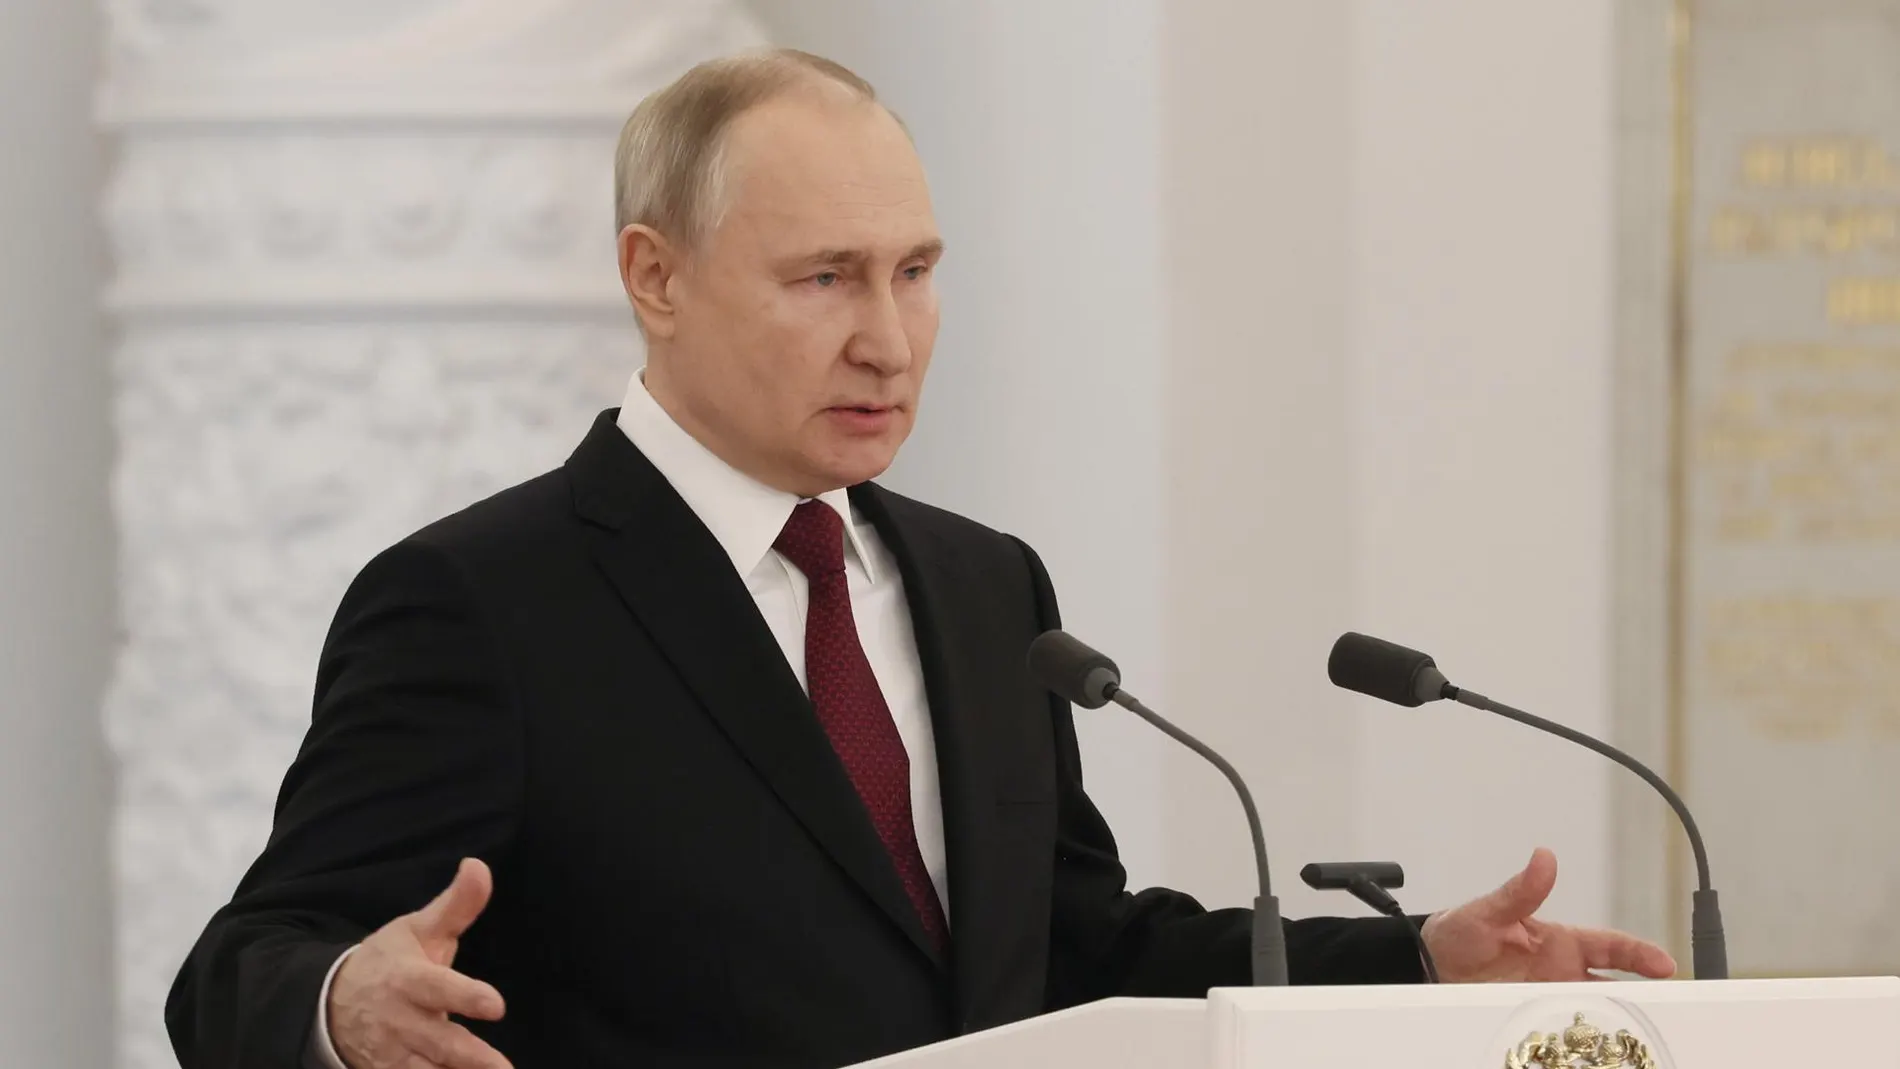 Los rusos piden negociaciones mientras que Putin prepara una guerra larga